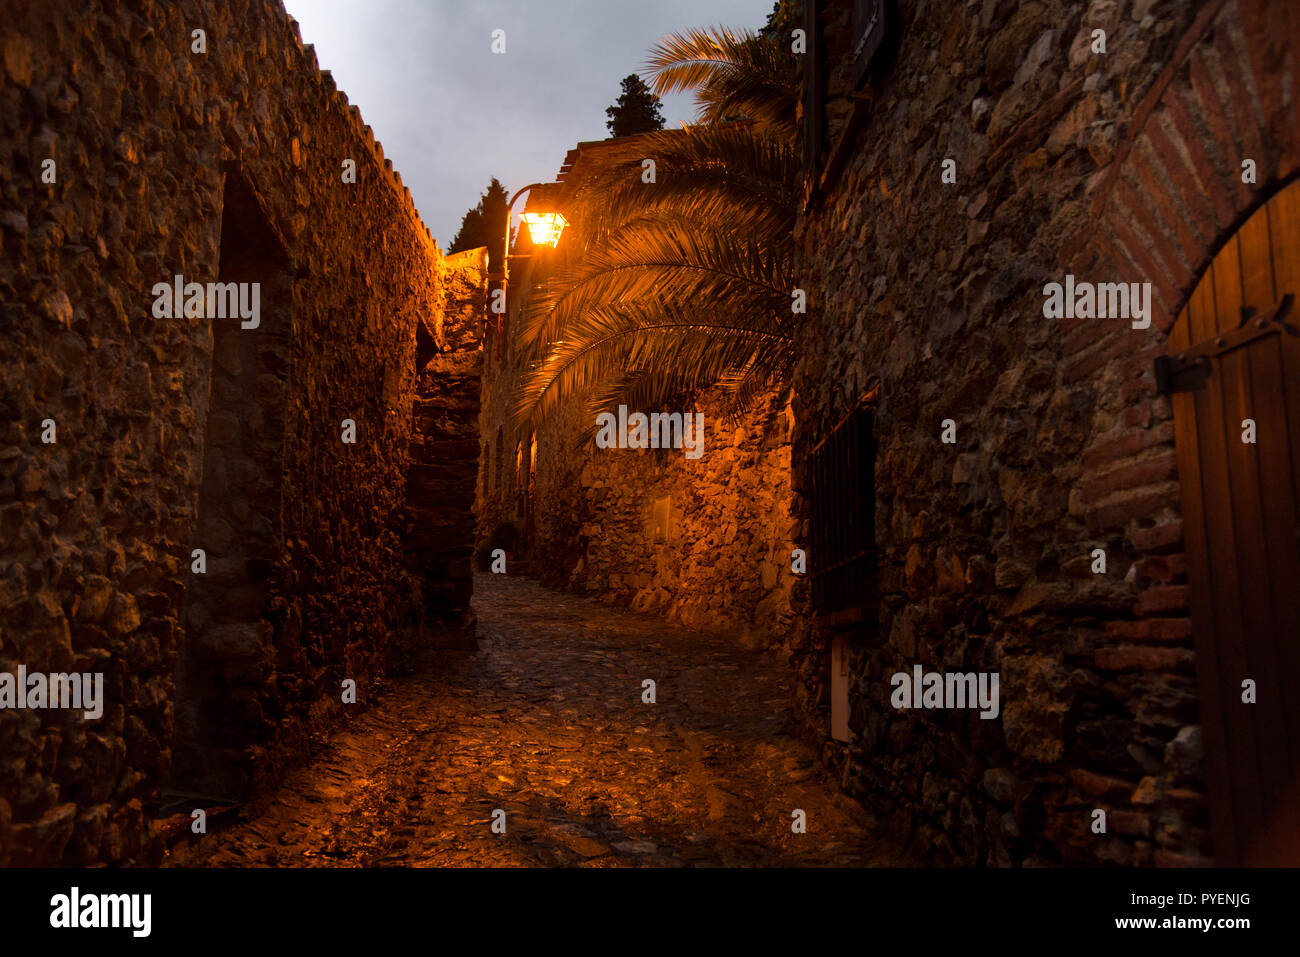 Borgo medievale di Castelnou in Francia durante la notte Foto Stock